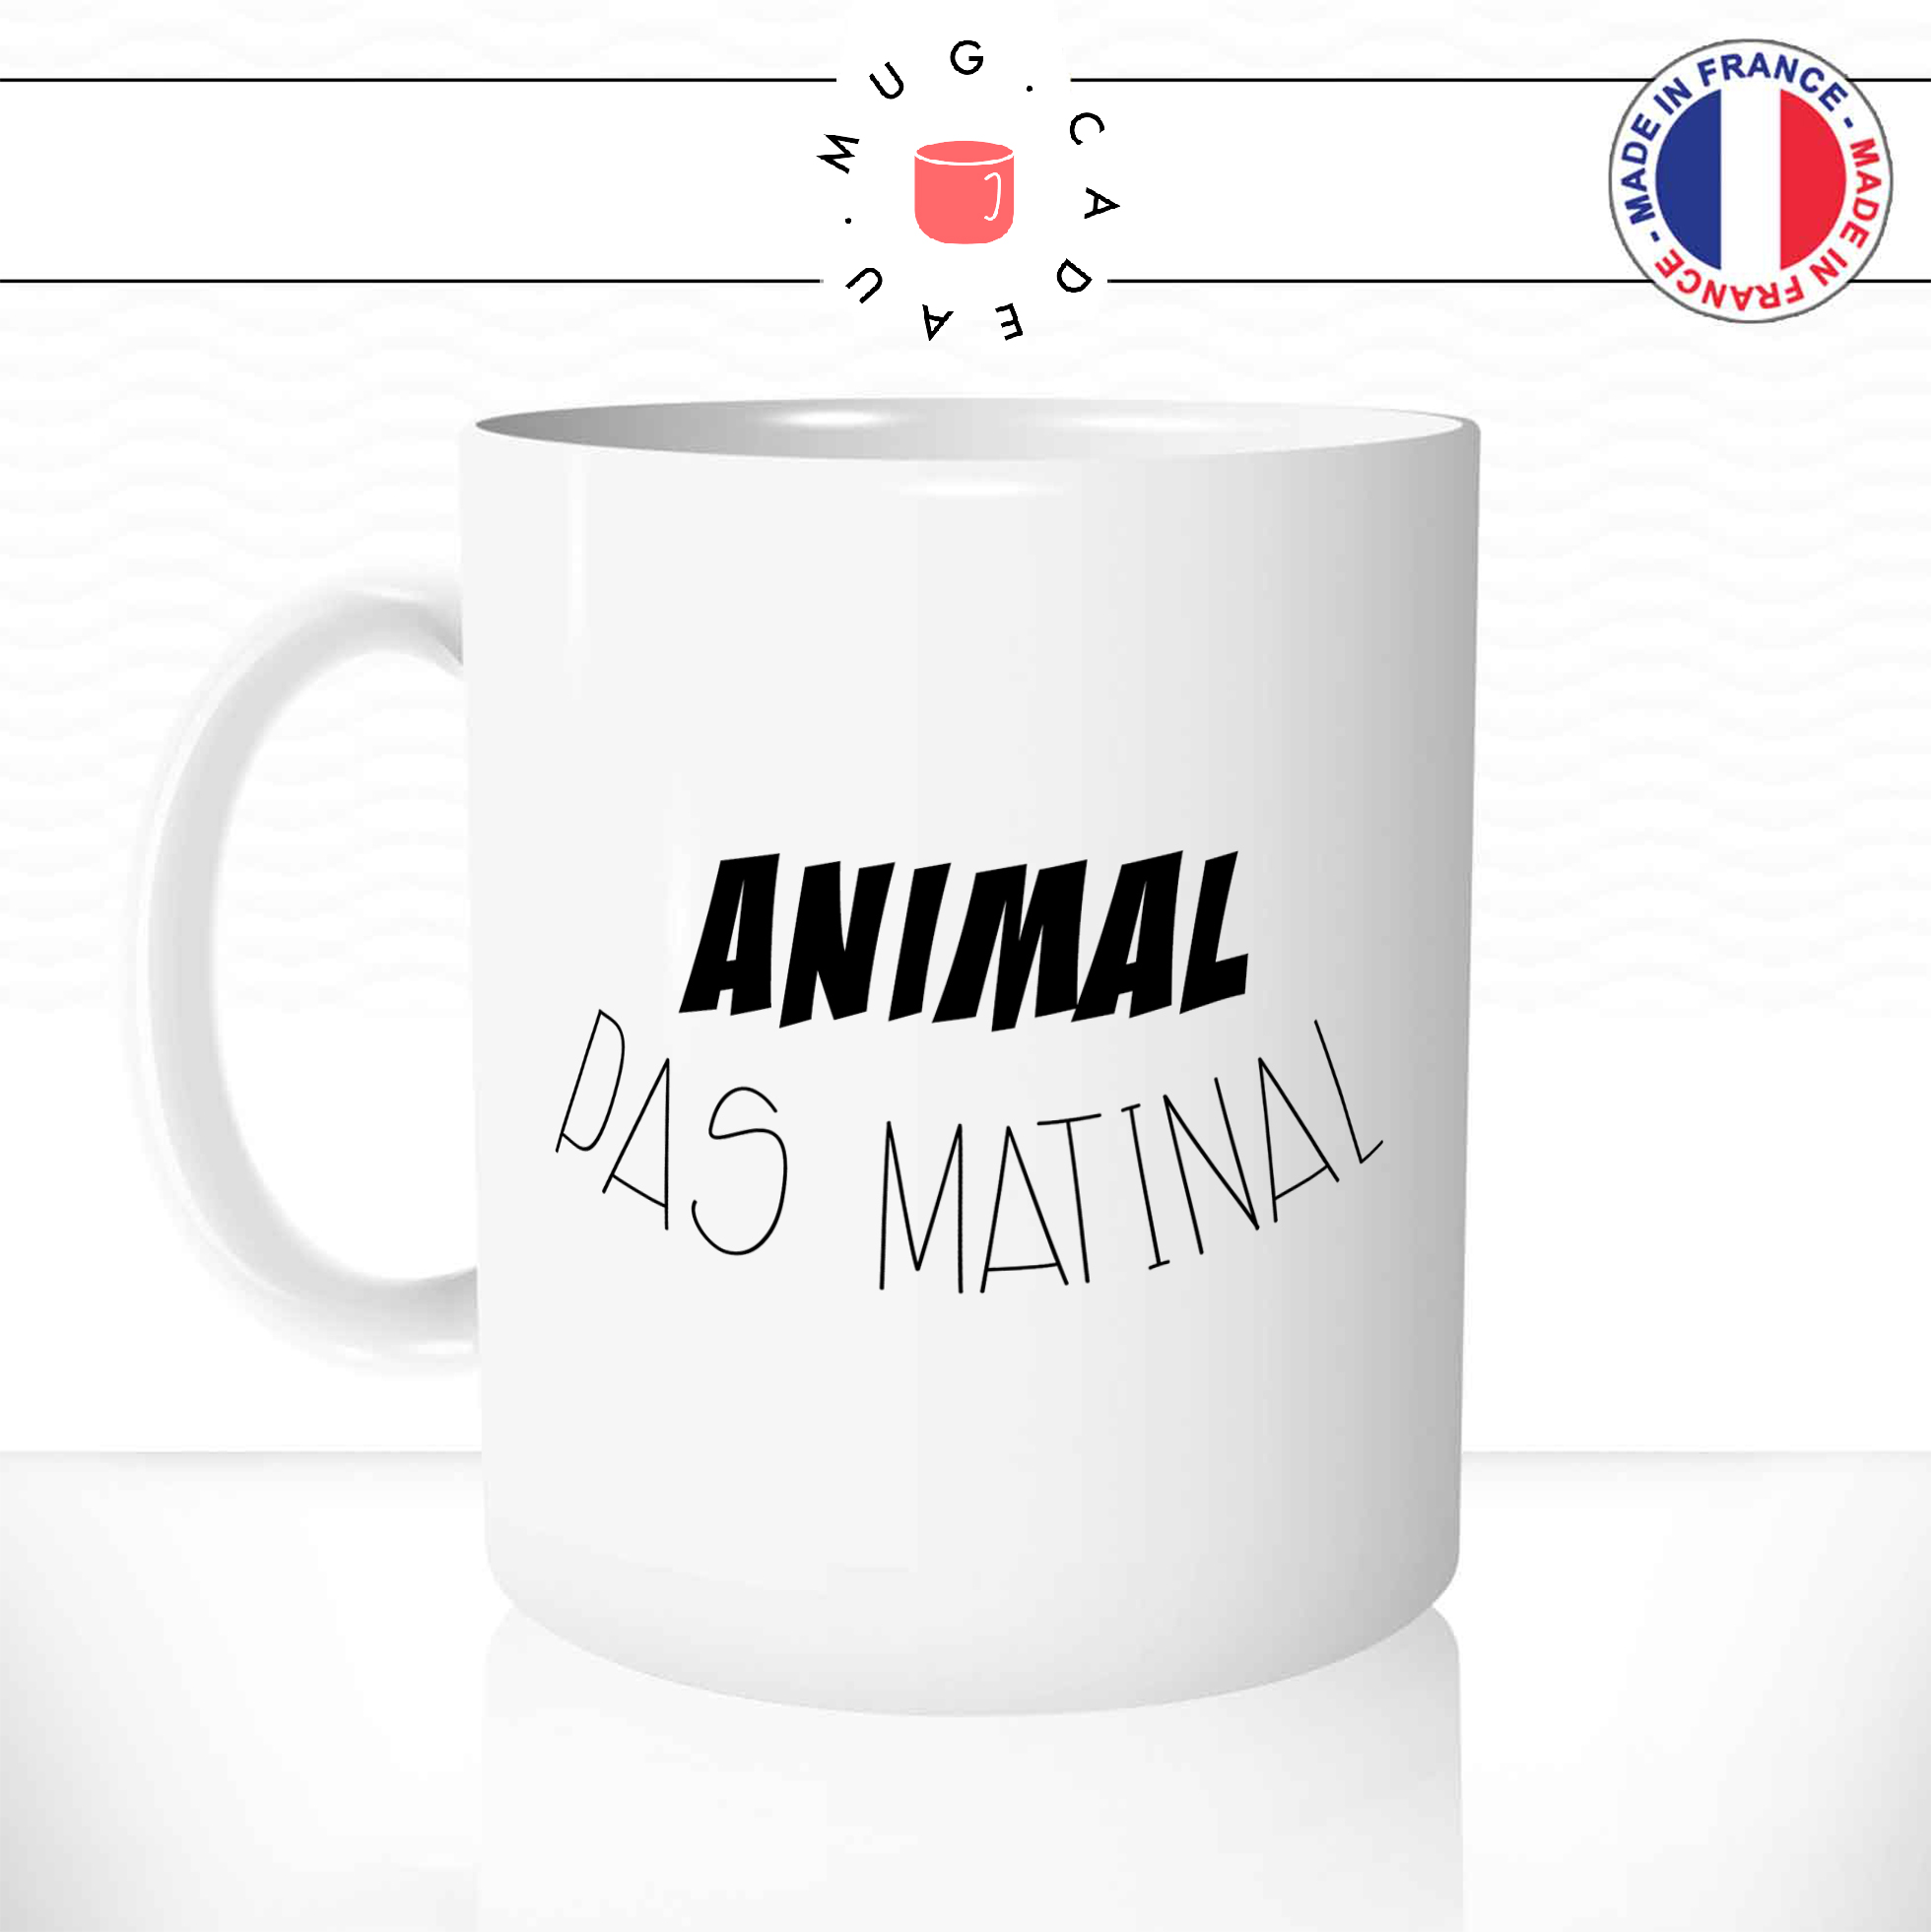 animalpasmatinal